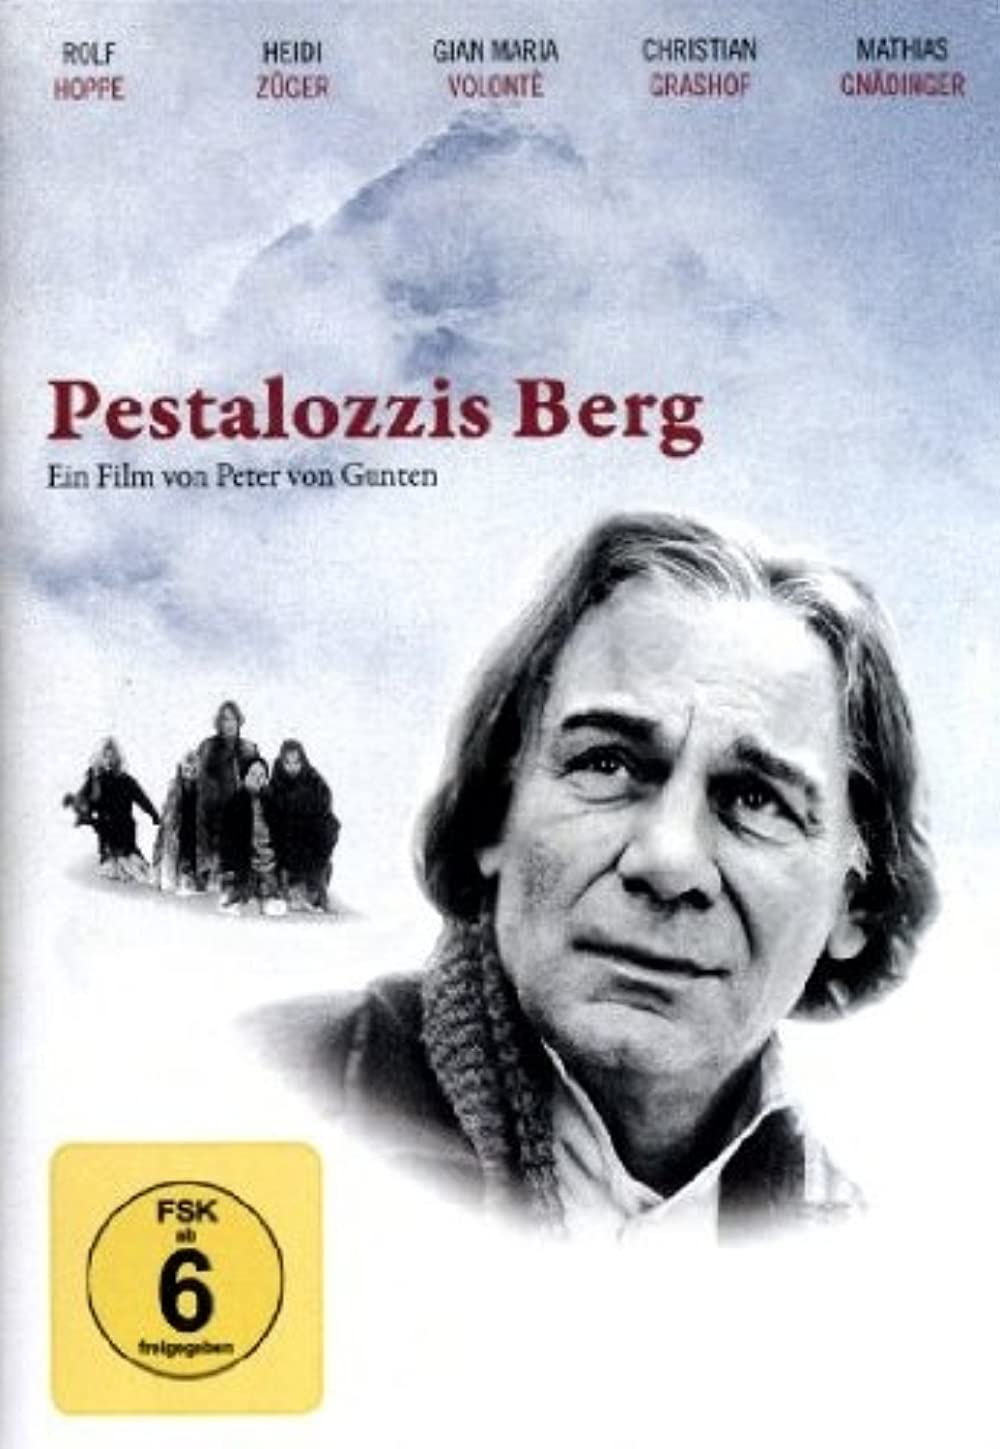 Filmbeschreibung zu Pestalozzis Berg